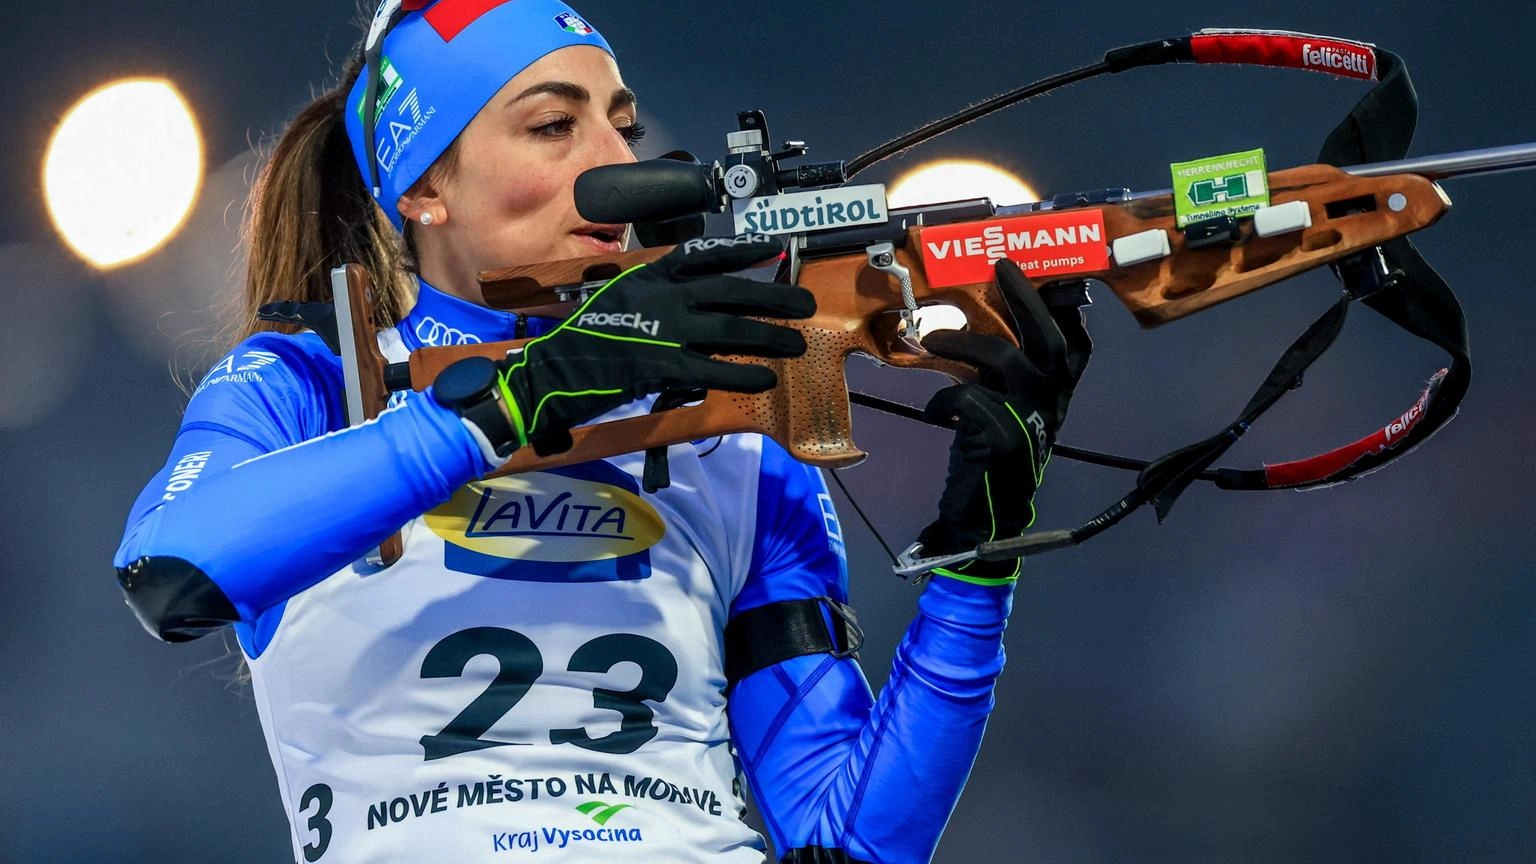 Mondiali biathlon: Lisa Vittozzi argento nell'inseguimento